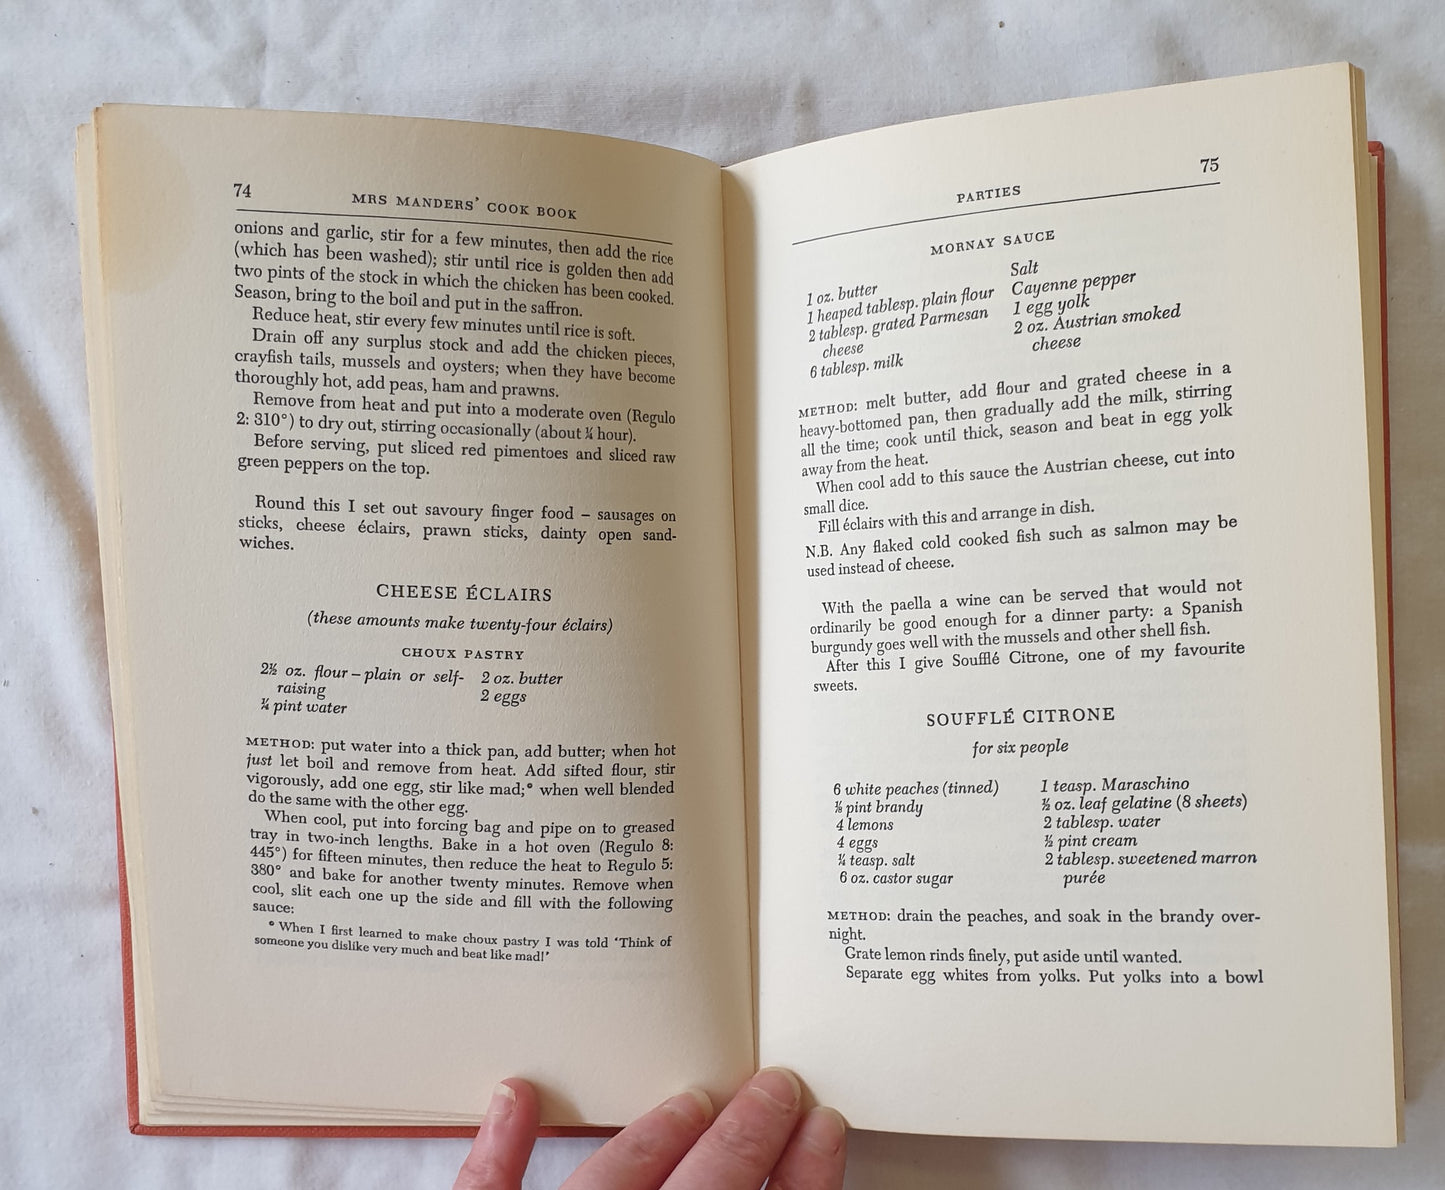 Mrs Manders’ Cookbook by Olga Sarah Manders